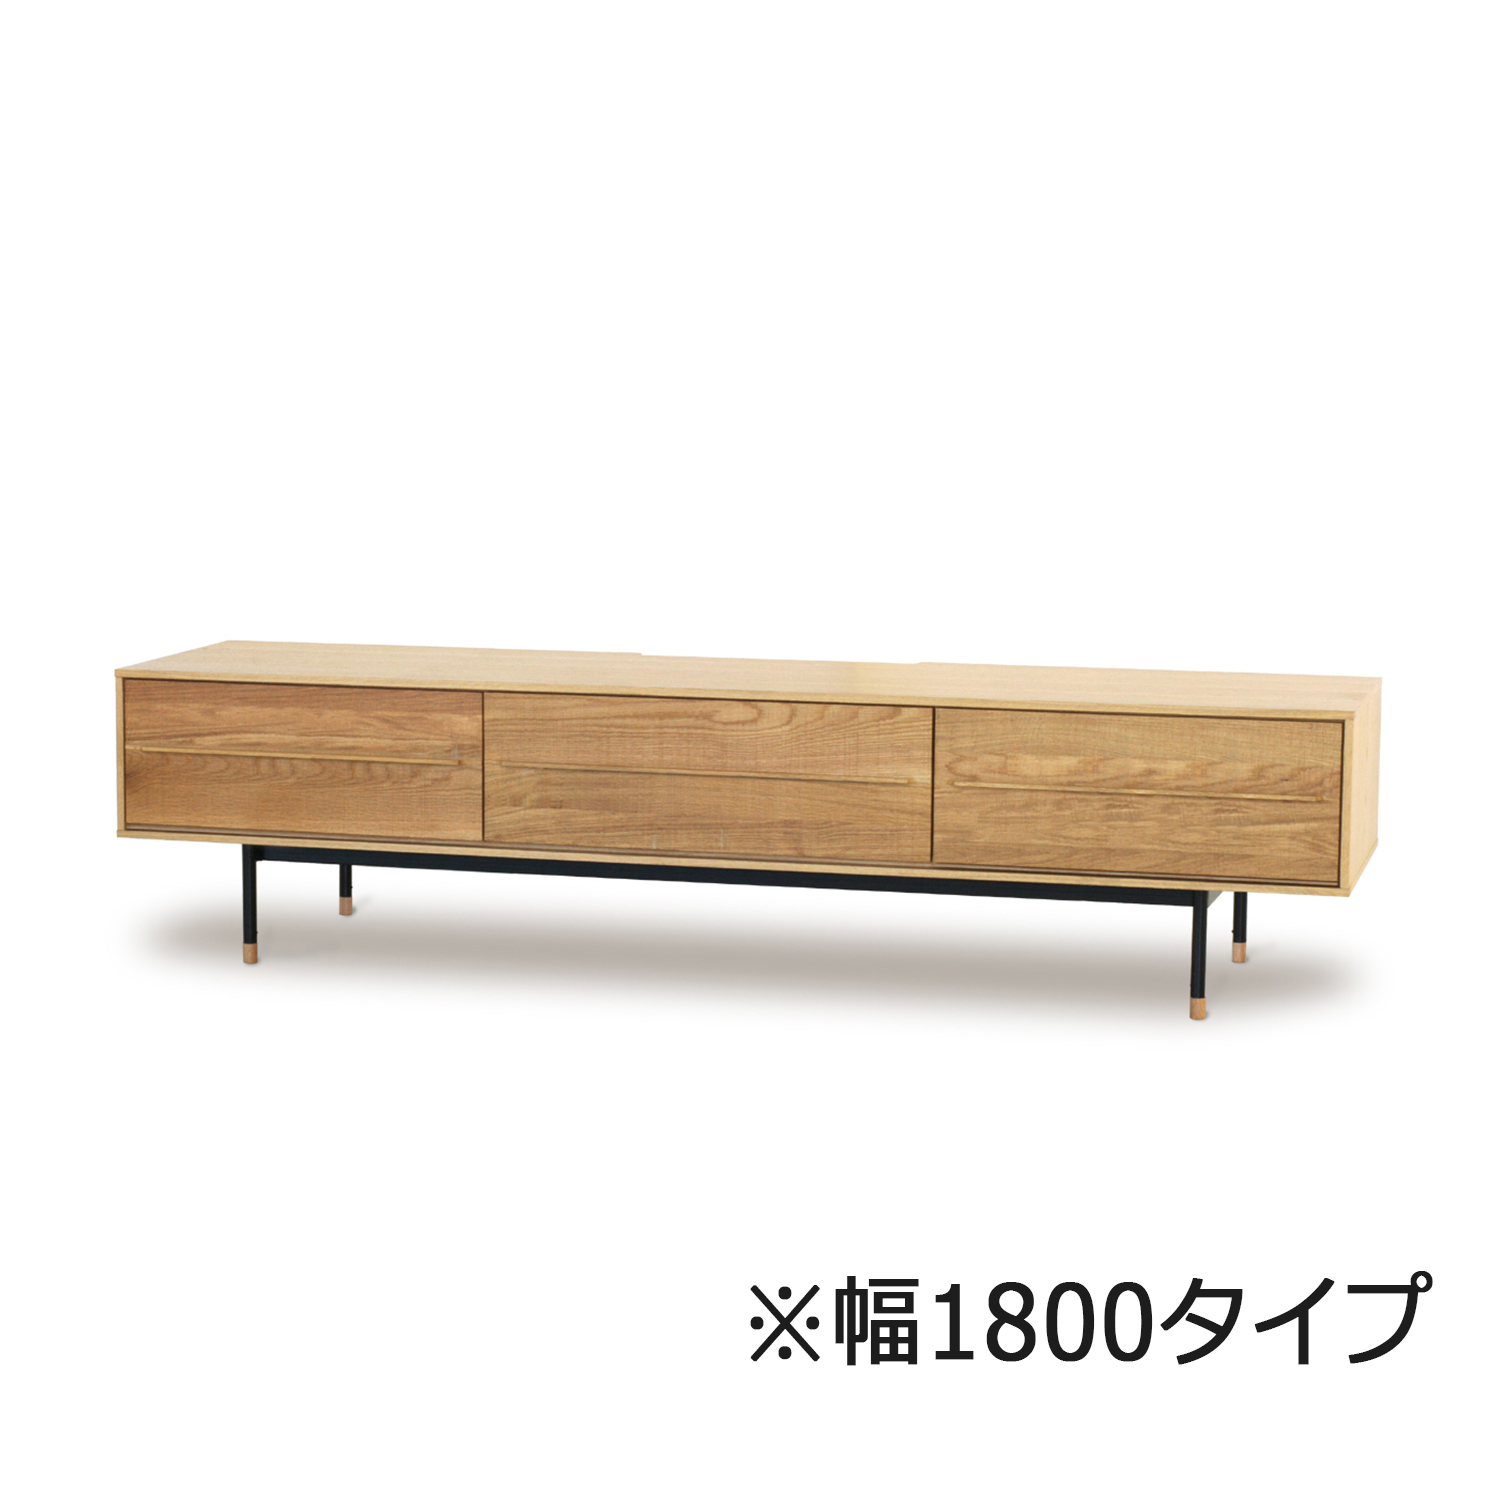 起立木工 テレビボード「ドリフトオーク」オーク材 全3サイズ | 大塚 